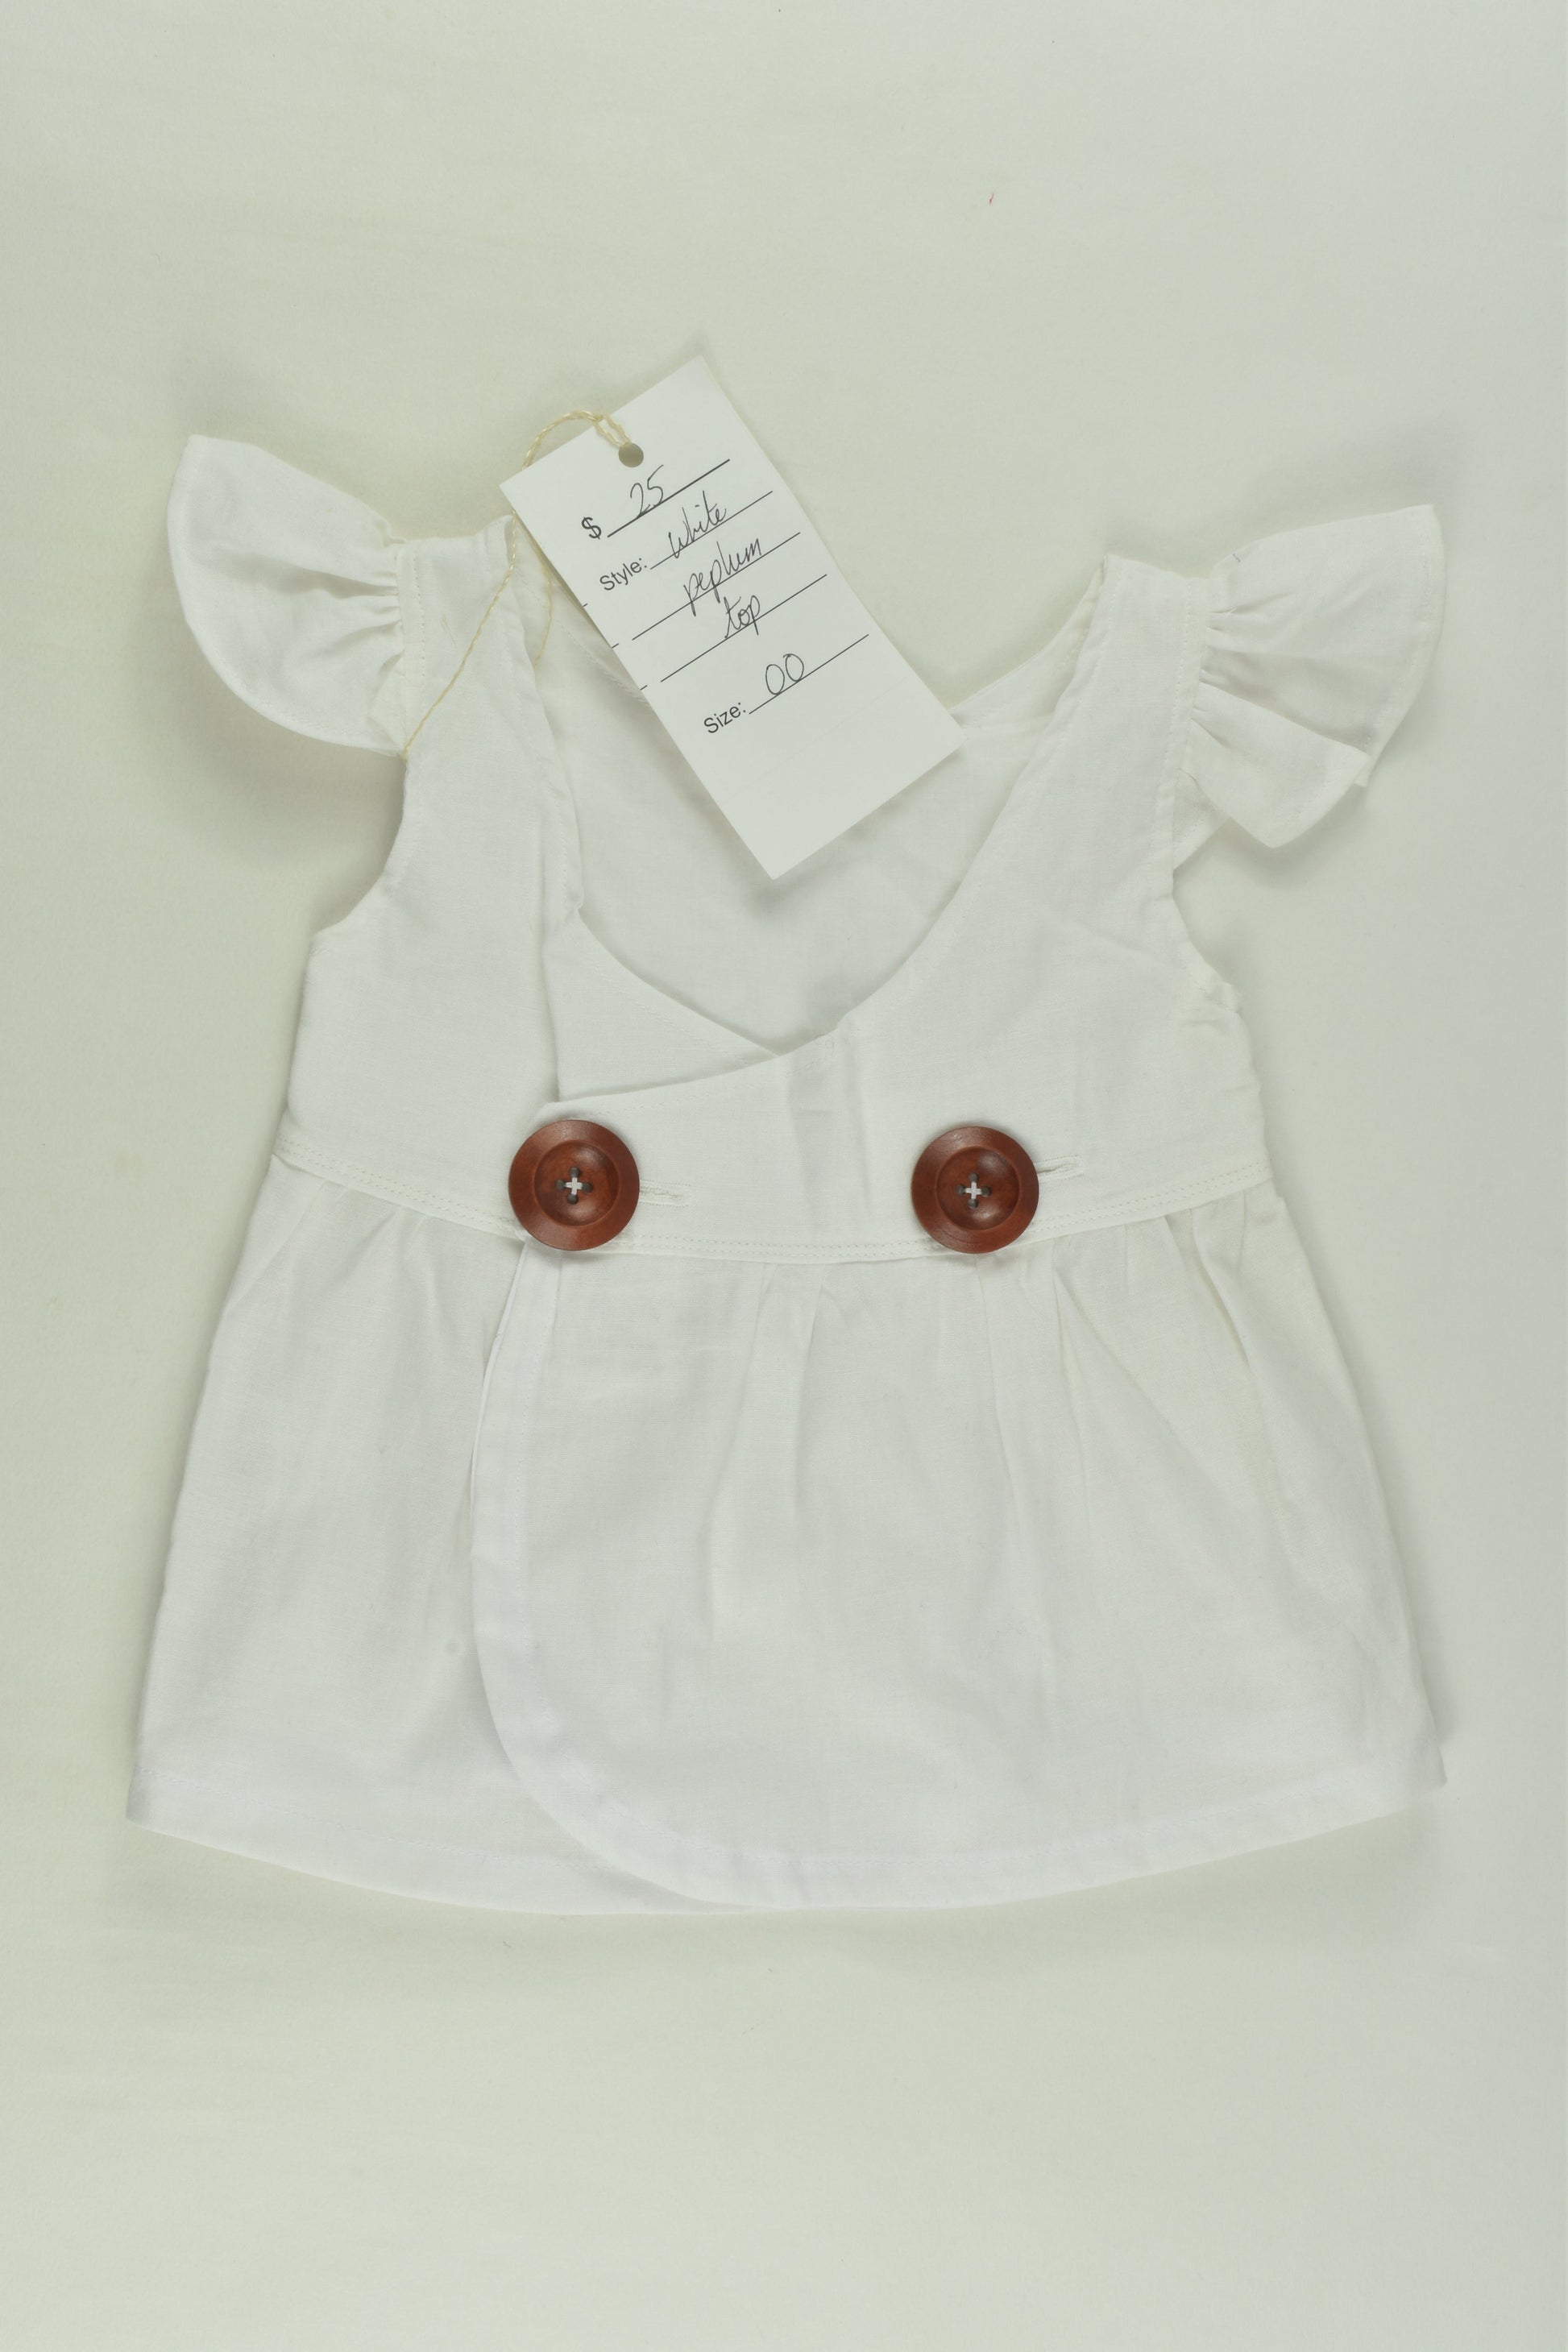 NEW Sew Baby Size 00 Handmade Peplum Top